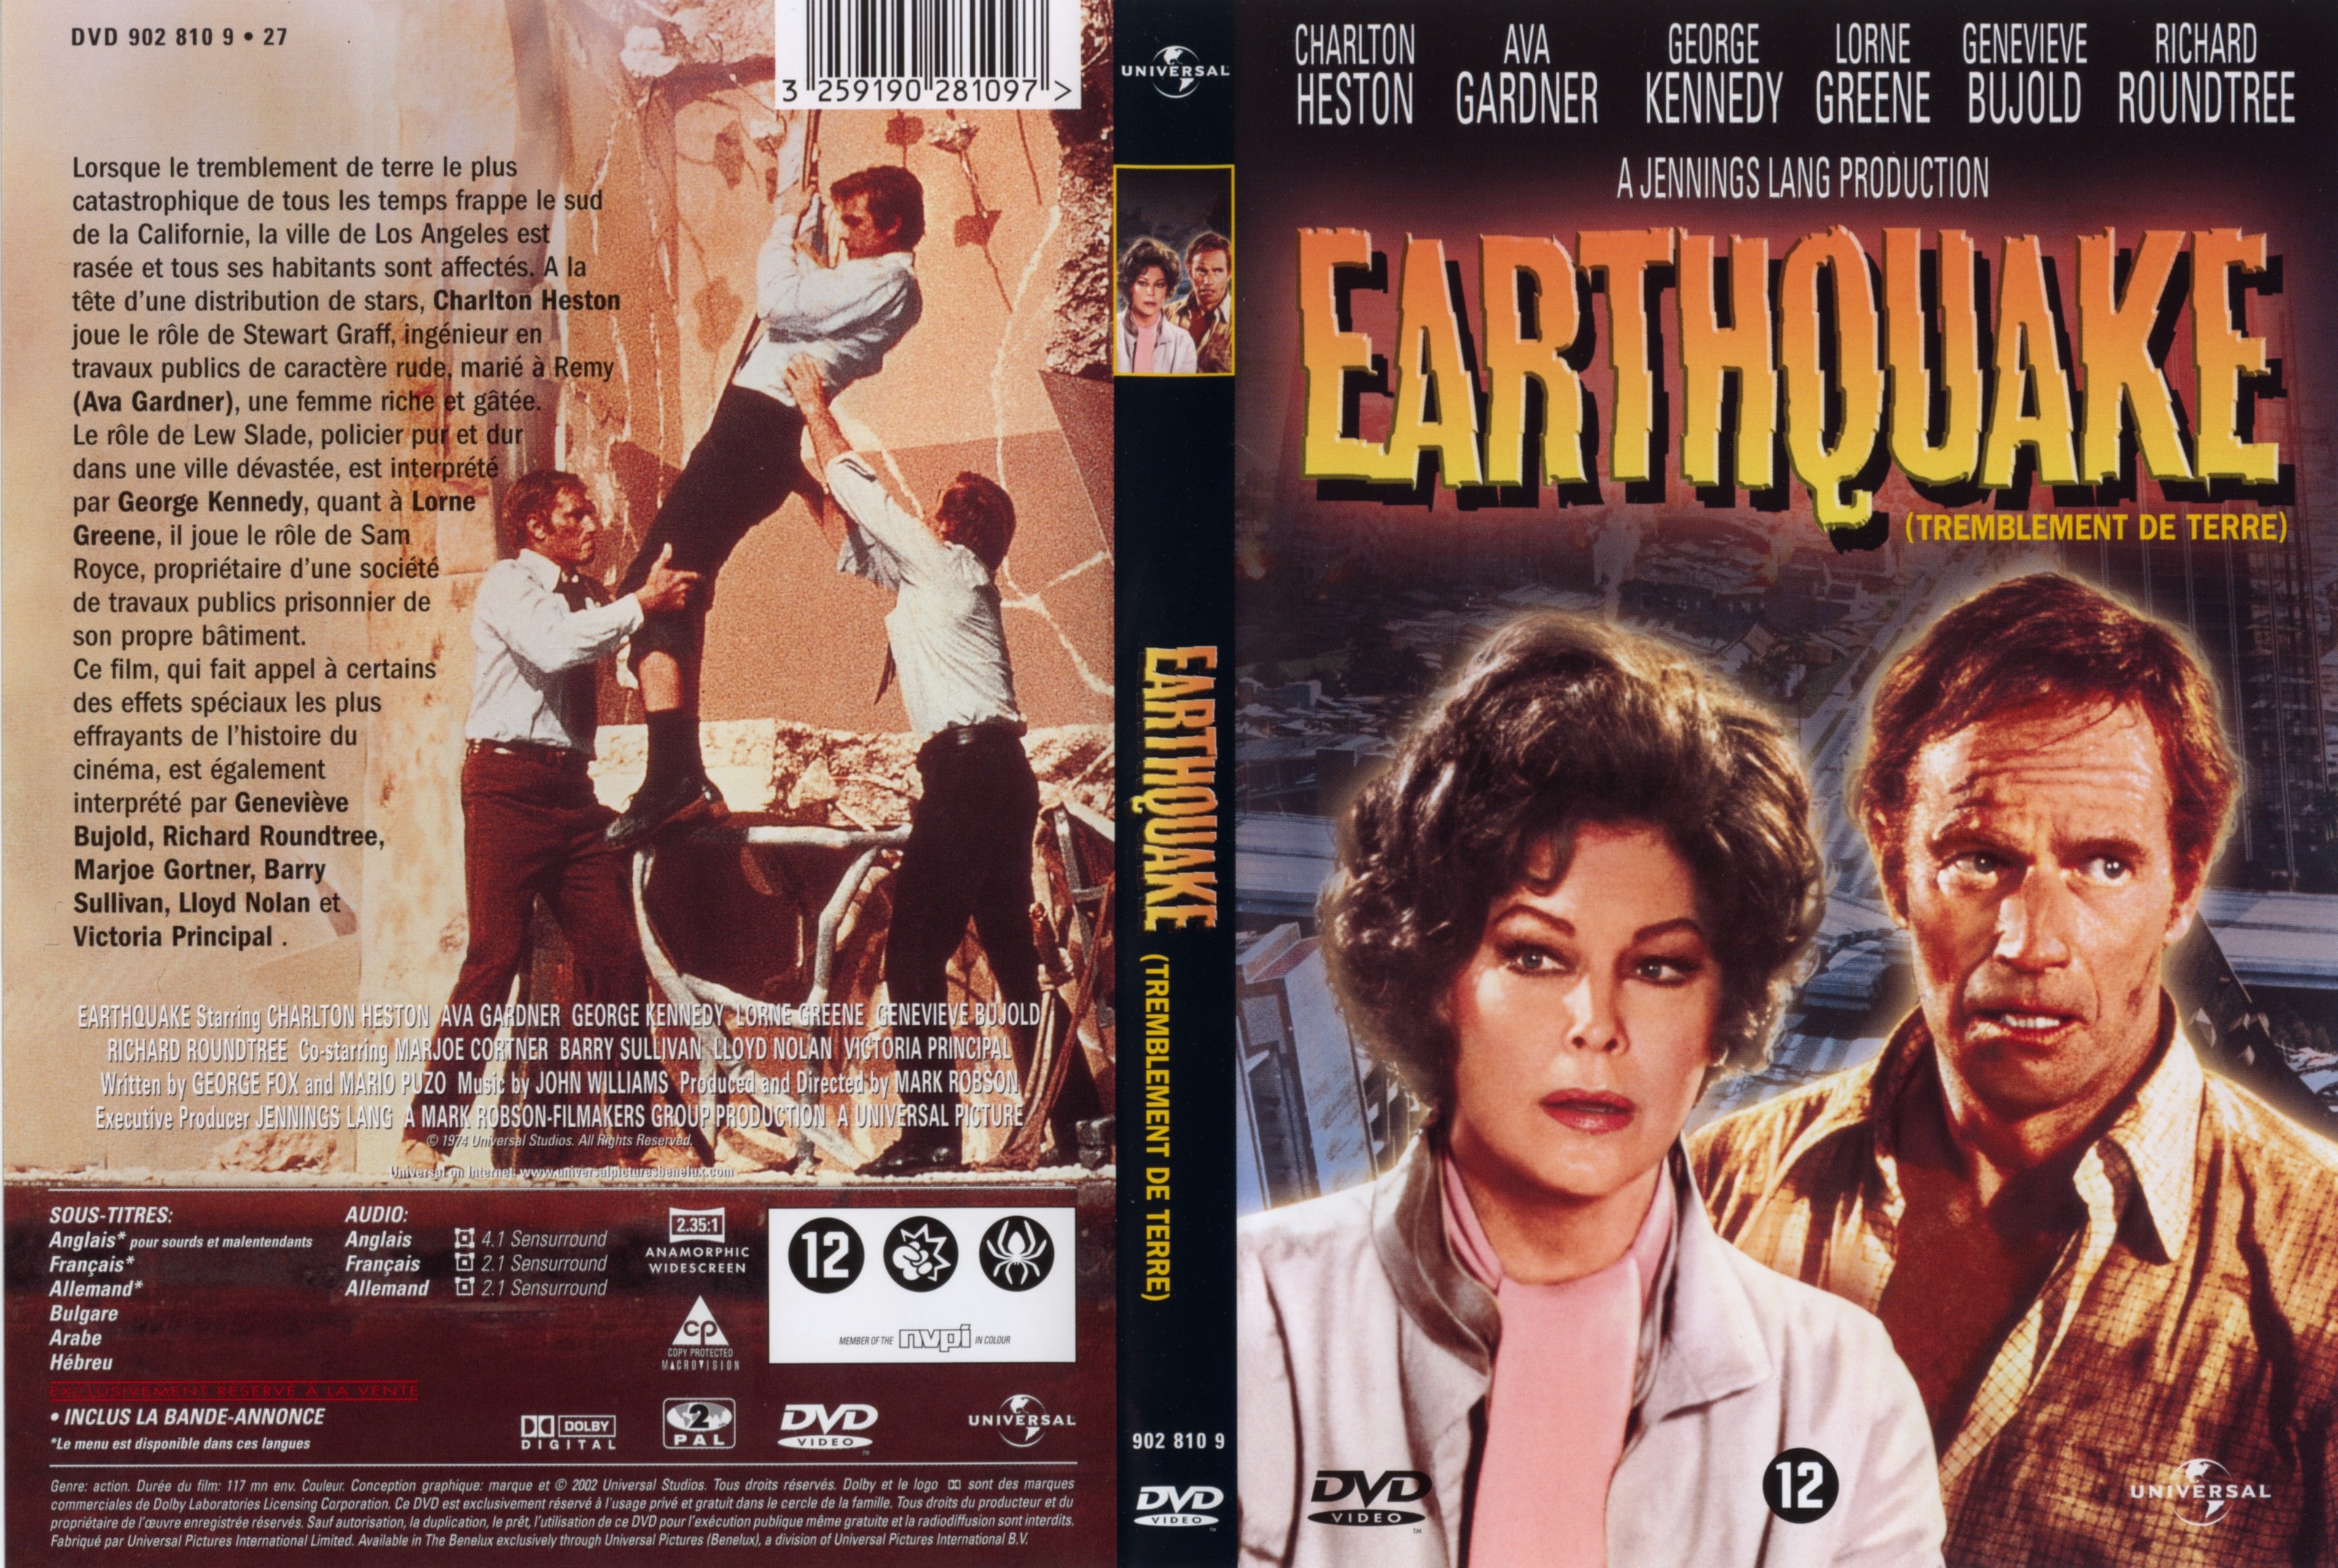 Jaquette DVD Tremblement de terre (1974) v2